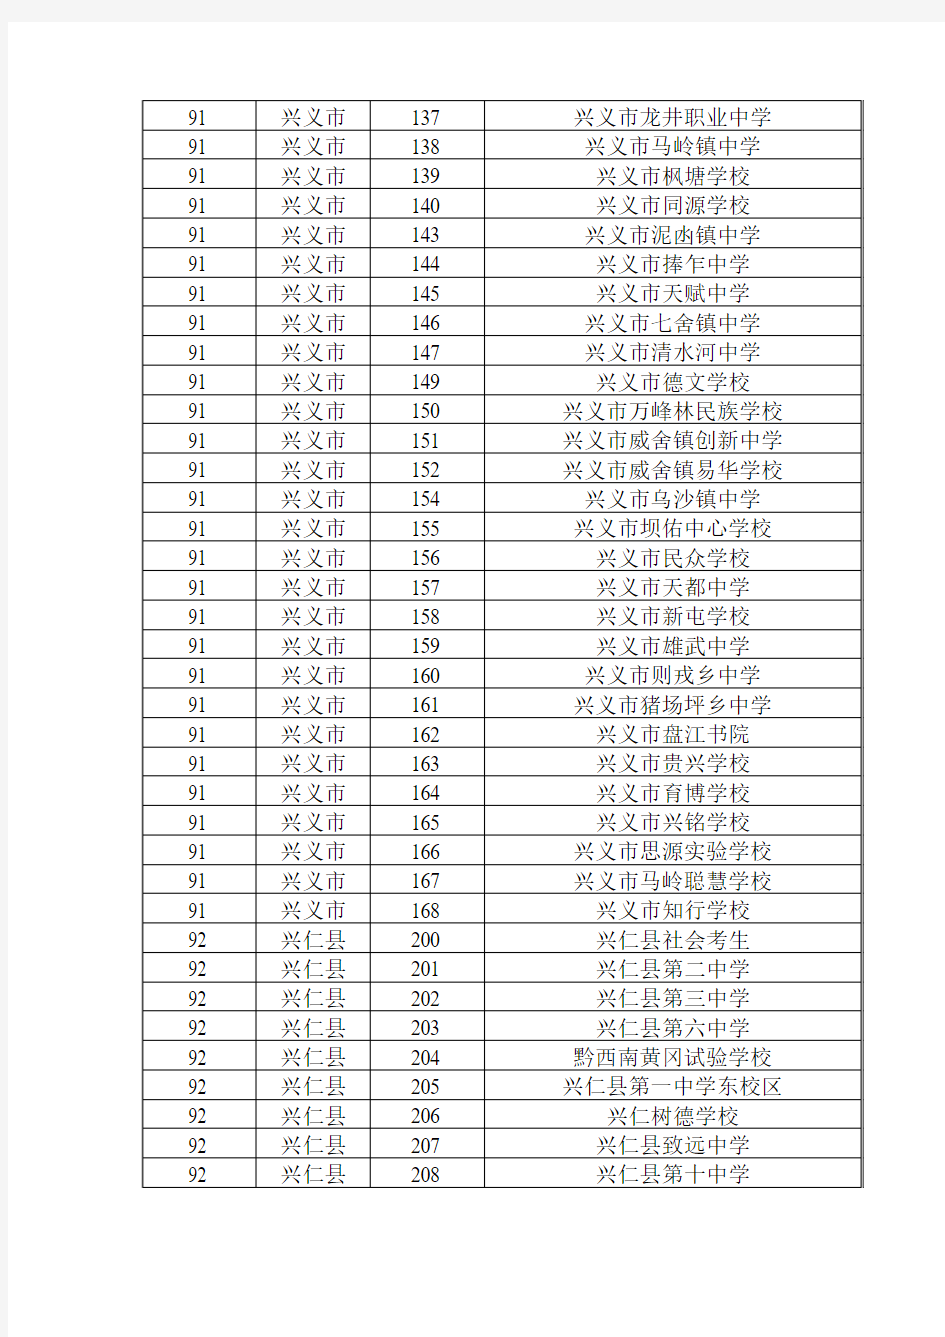 黔西南州2018年普通高中学校招生考试初中学校代码和学校名称表